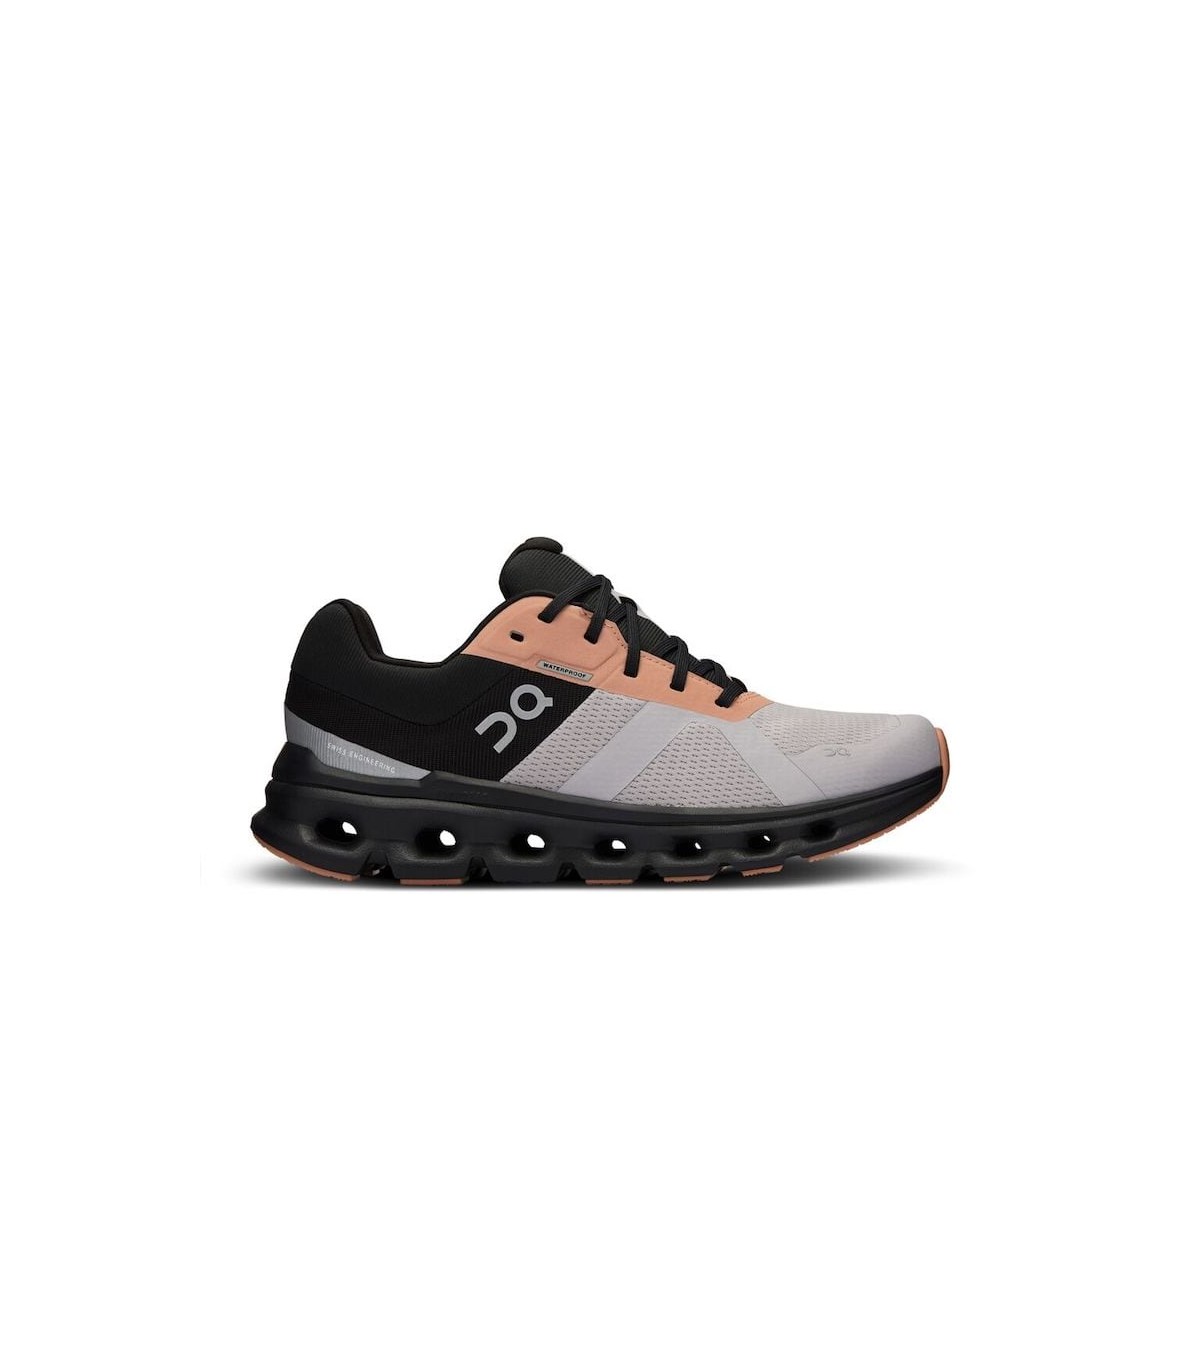 Cloudrunner waterproof w 52.98051 Swiss Engineering shoes 